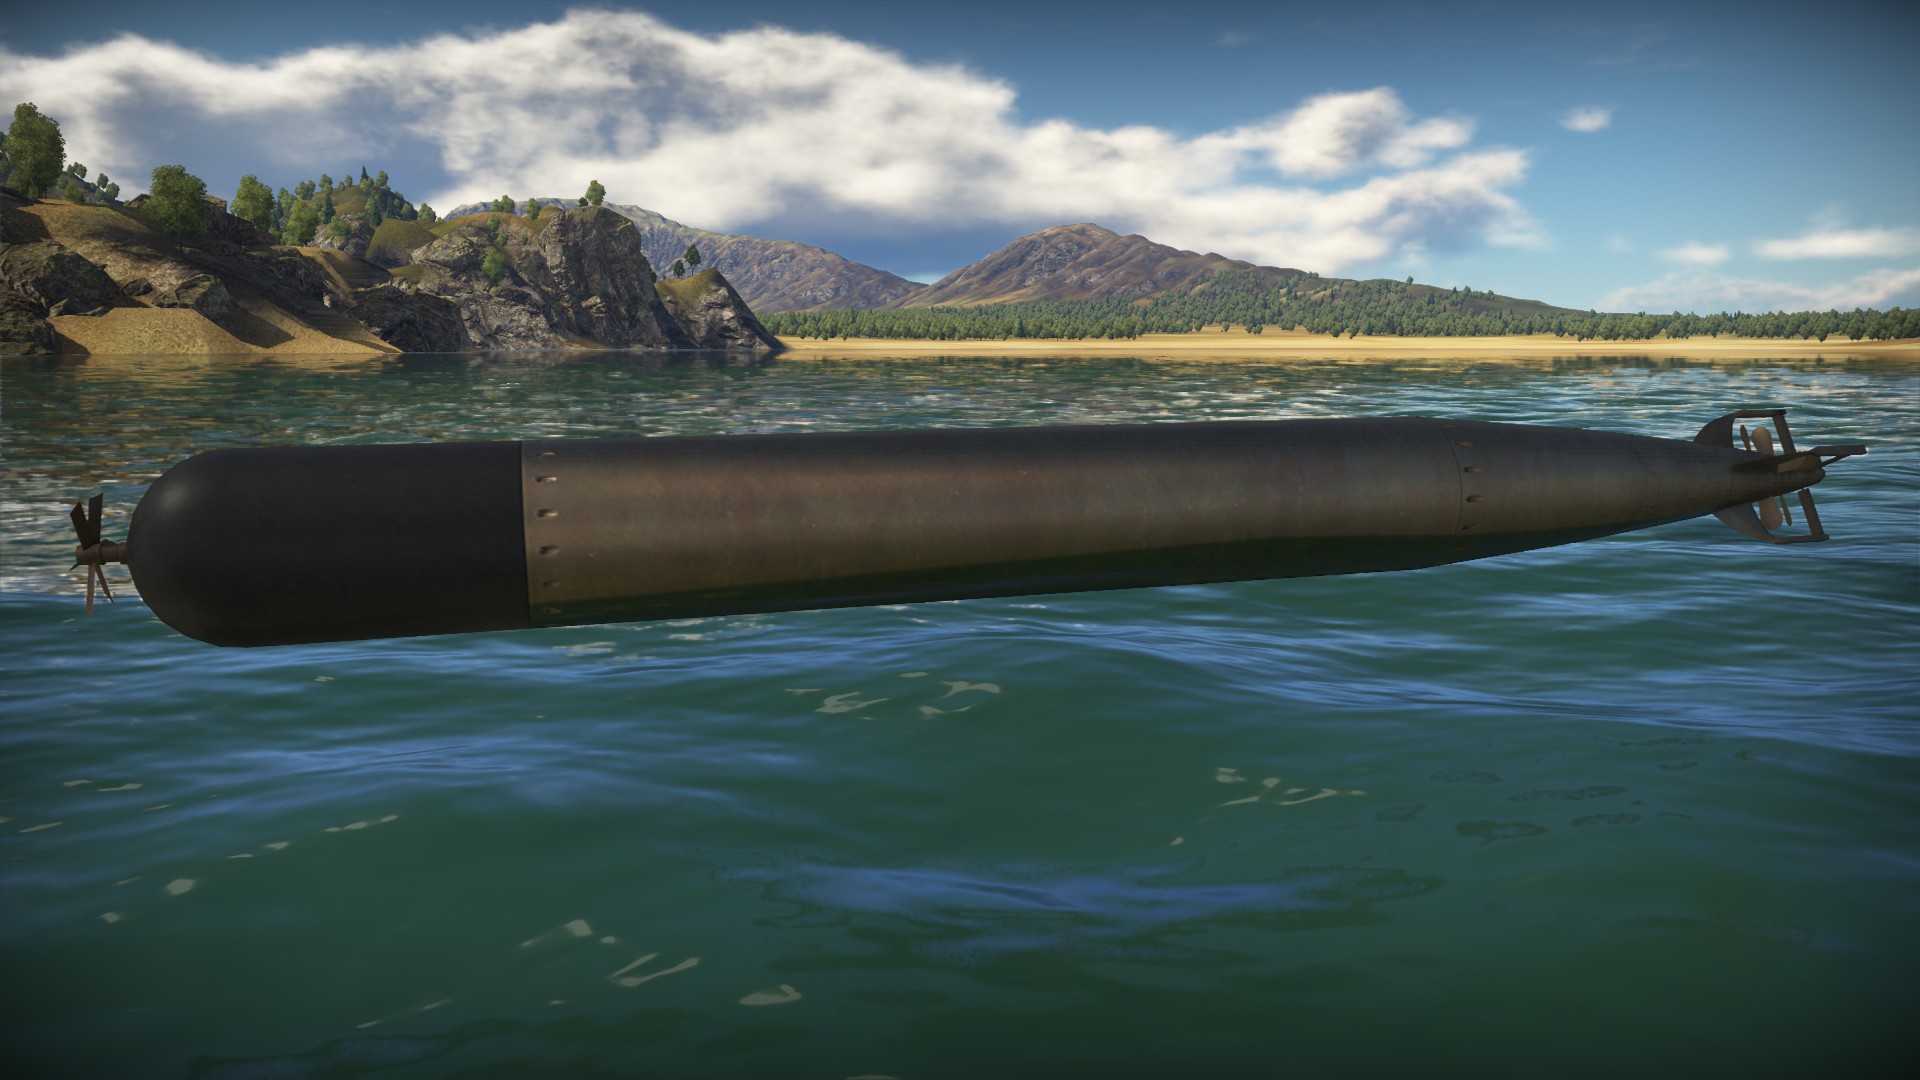 Торпеда город. Mark 48 торпеда. Посейдон торпеда. Торпеда кит 65-76 калибра 650 мм. Mark 13 Torpedo.